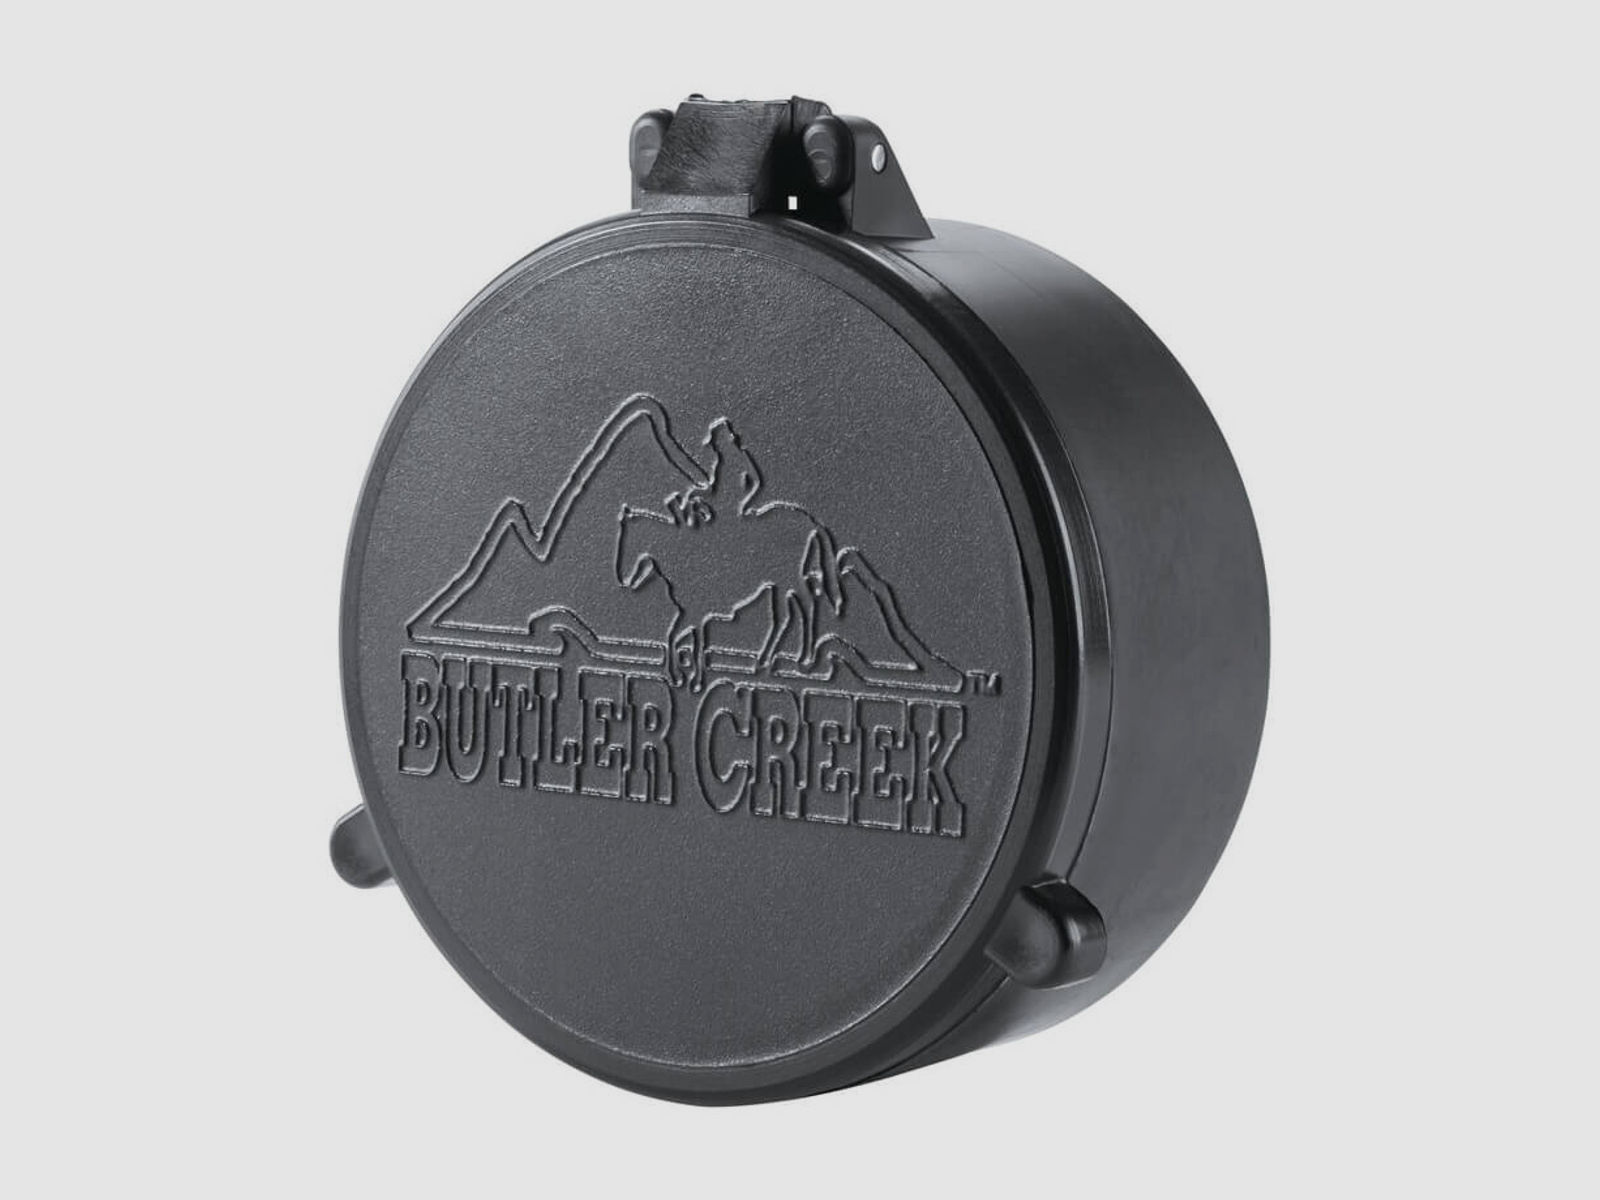 Butler Creek Objektiv Schutzkappe - 43,2mm